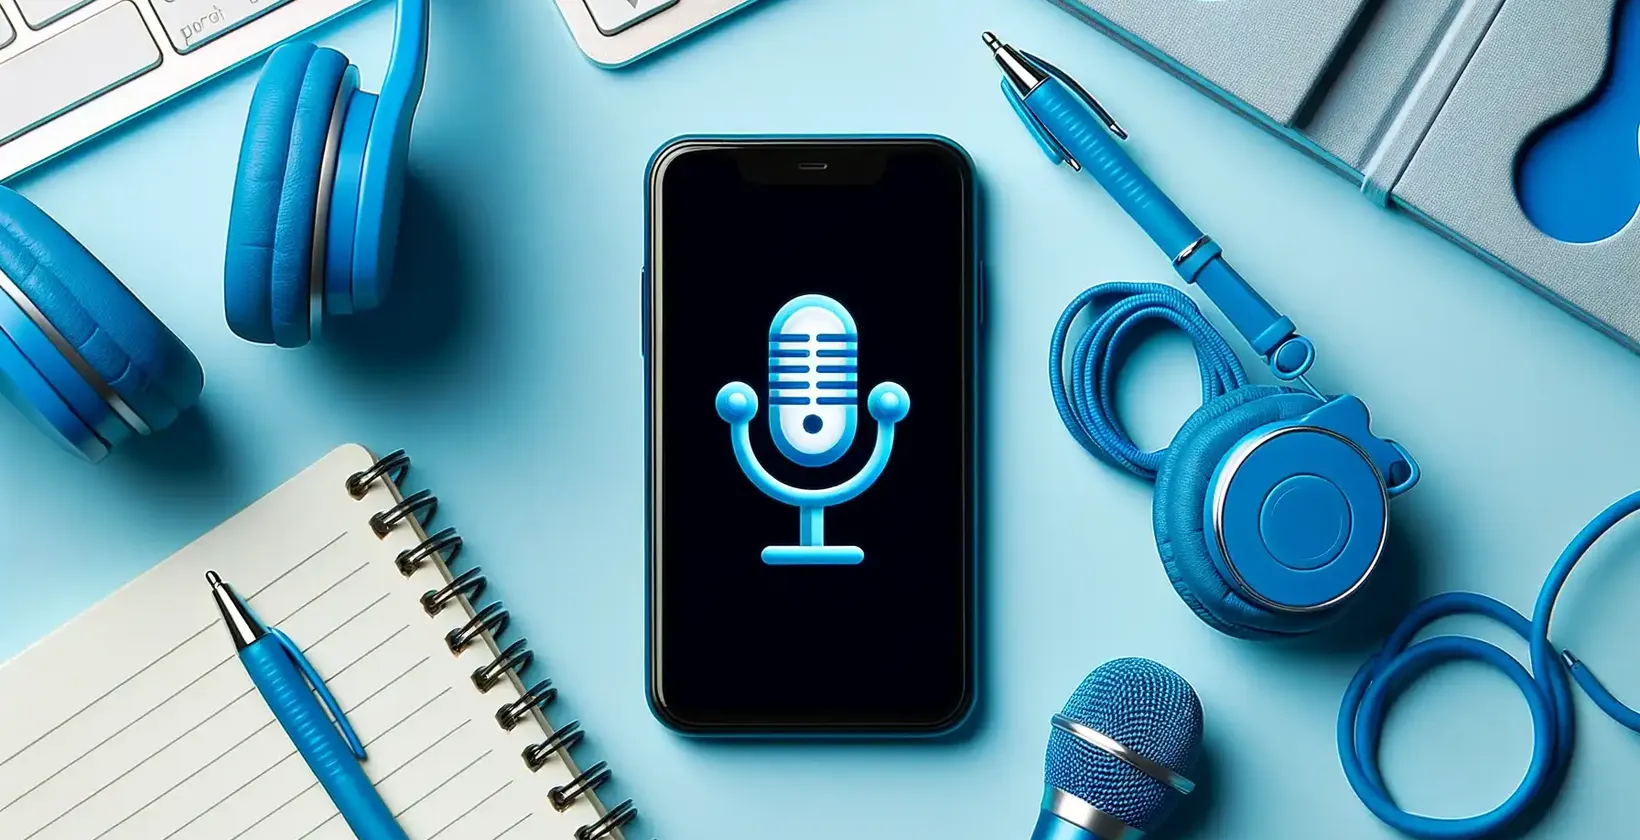 App for å transkribere lyd vist på en smarttelefon med blå hodetelefoner, notatblokk og teknisk tilbehør.